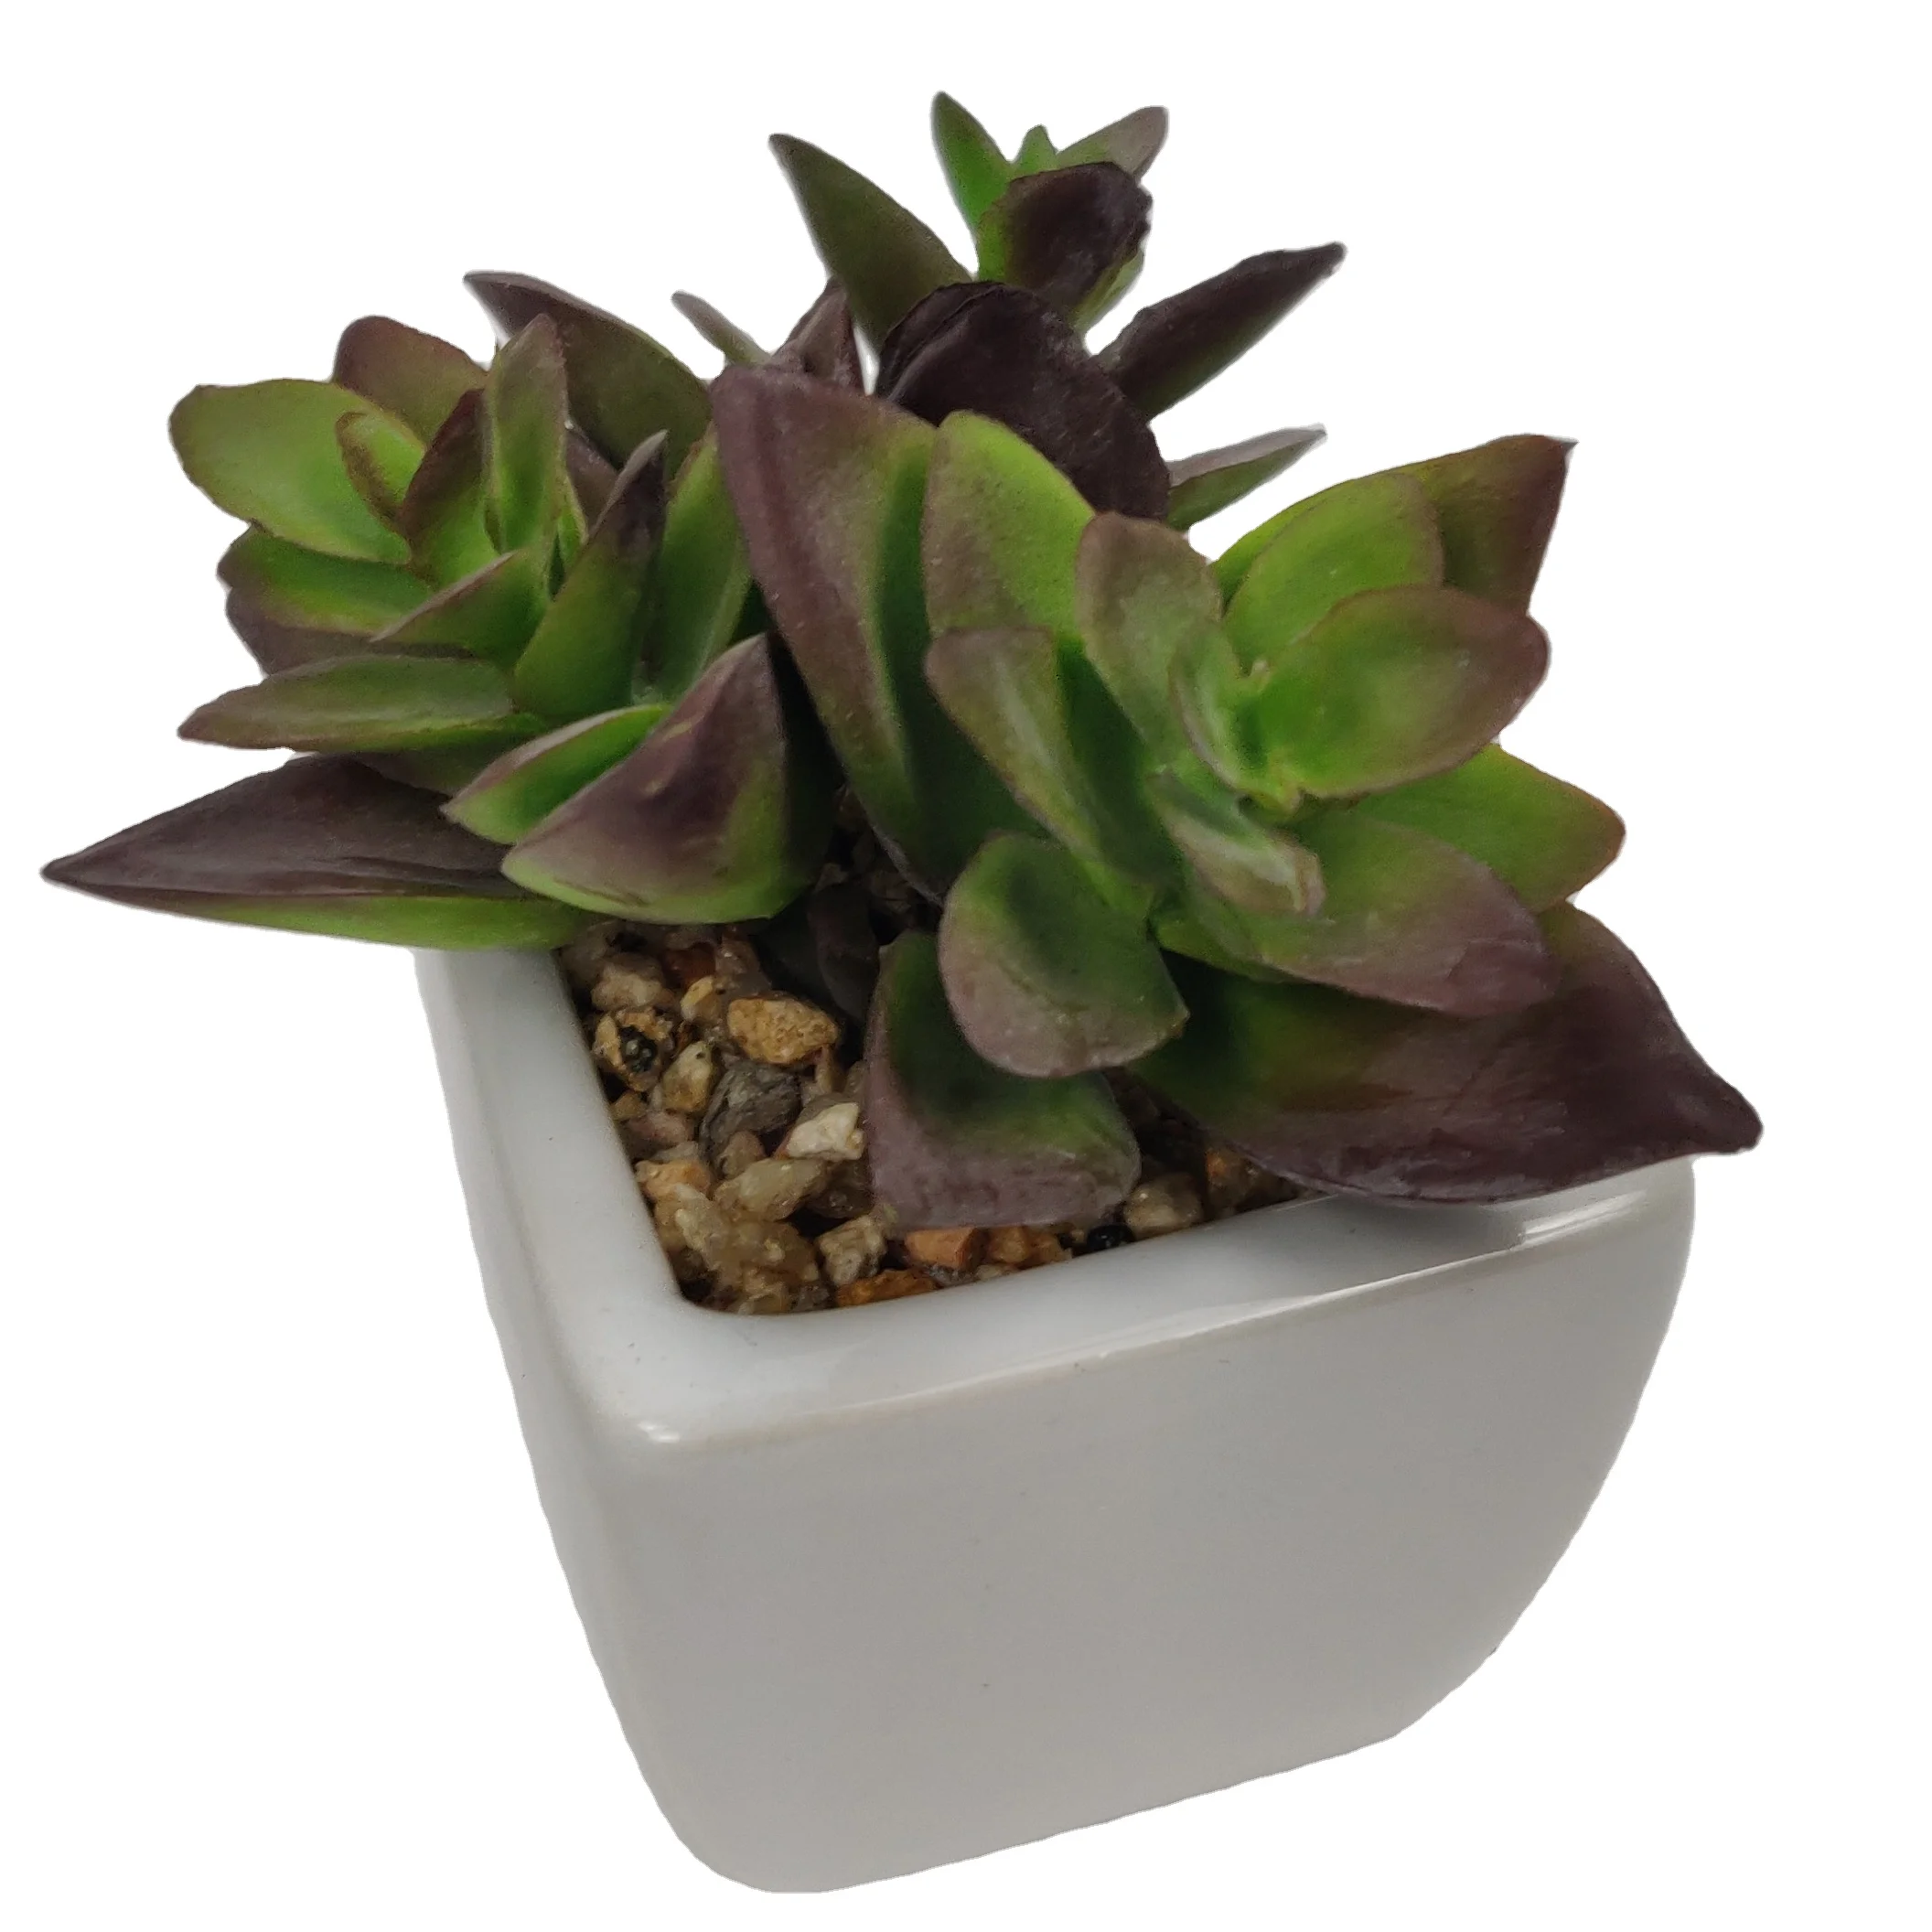 

Wholesale Mini Home Decoration Plastic Fuax Desk Pot Artificial Succulent Plants, As shown